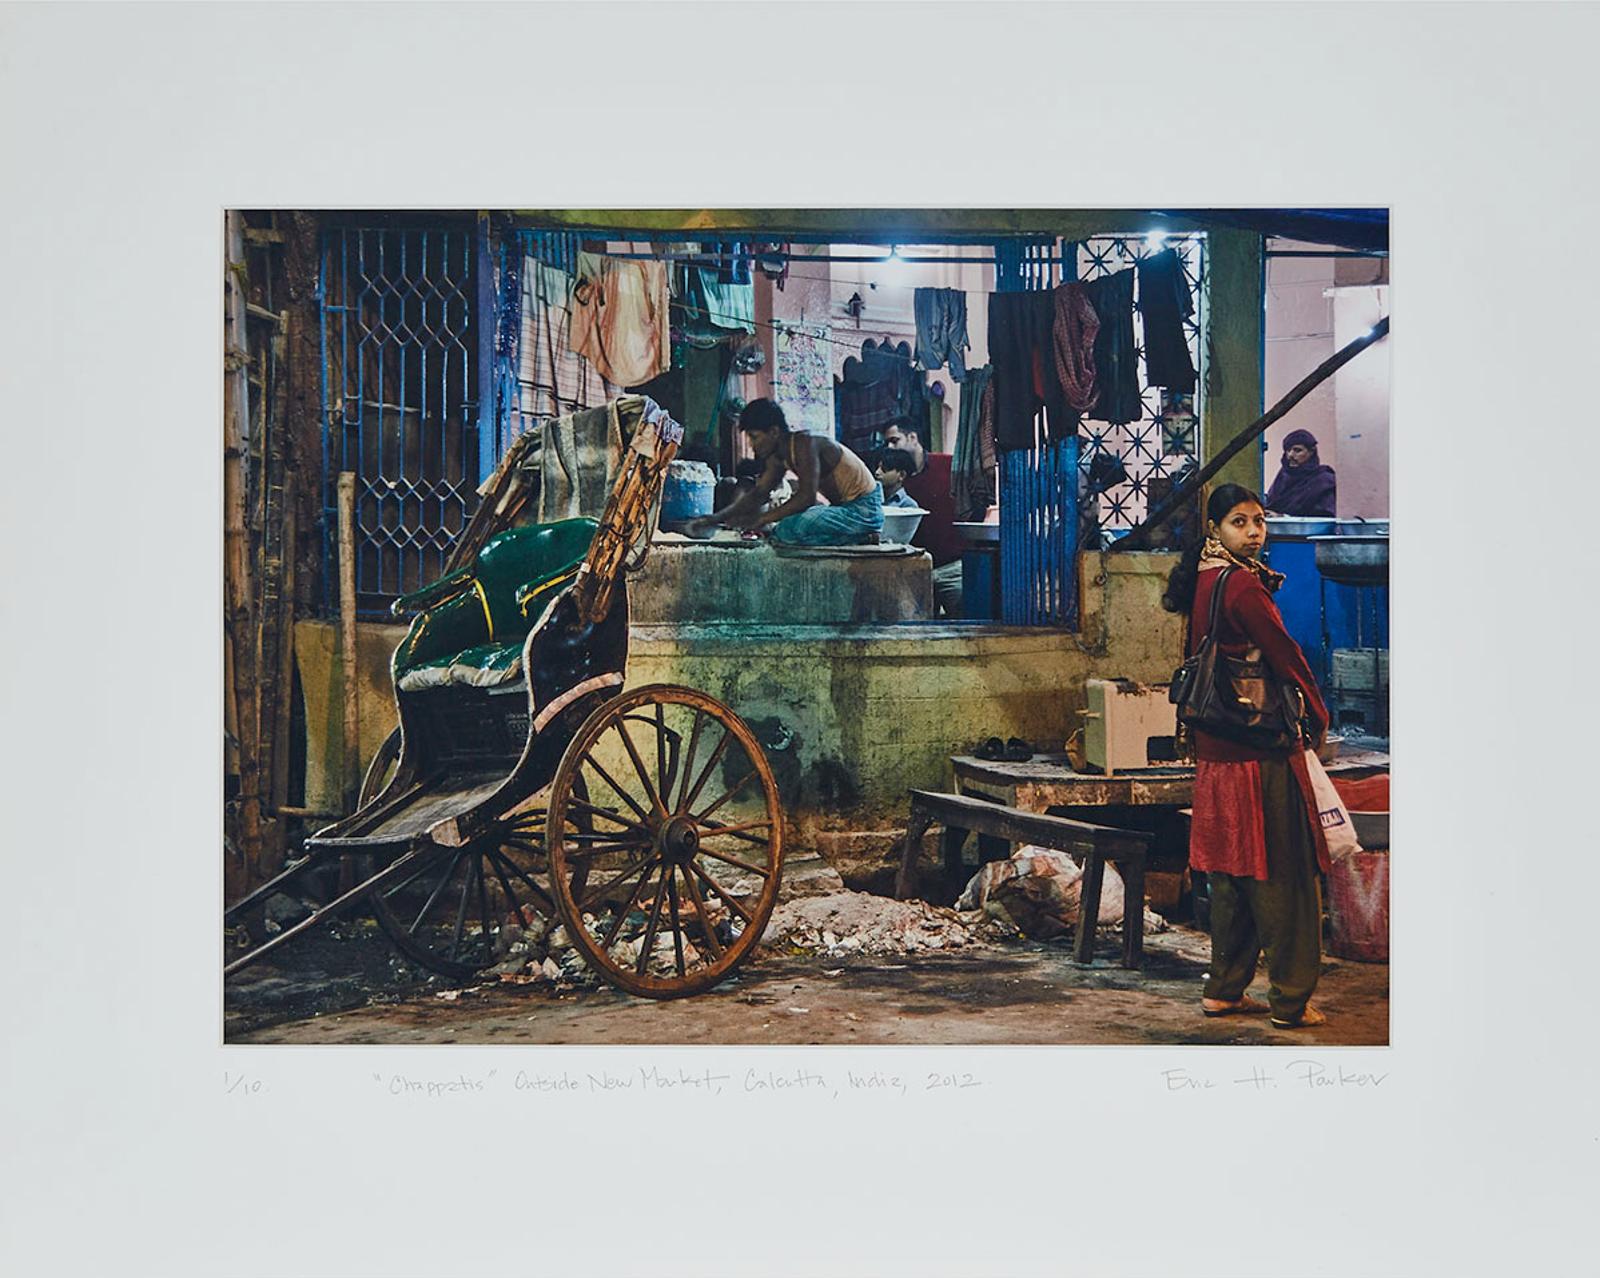 Eric H. Parker - Chapattis, Calcutta, 2012